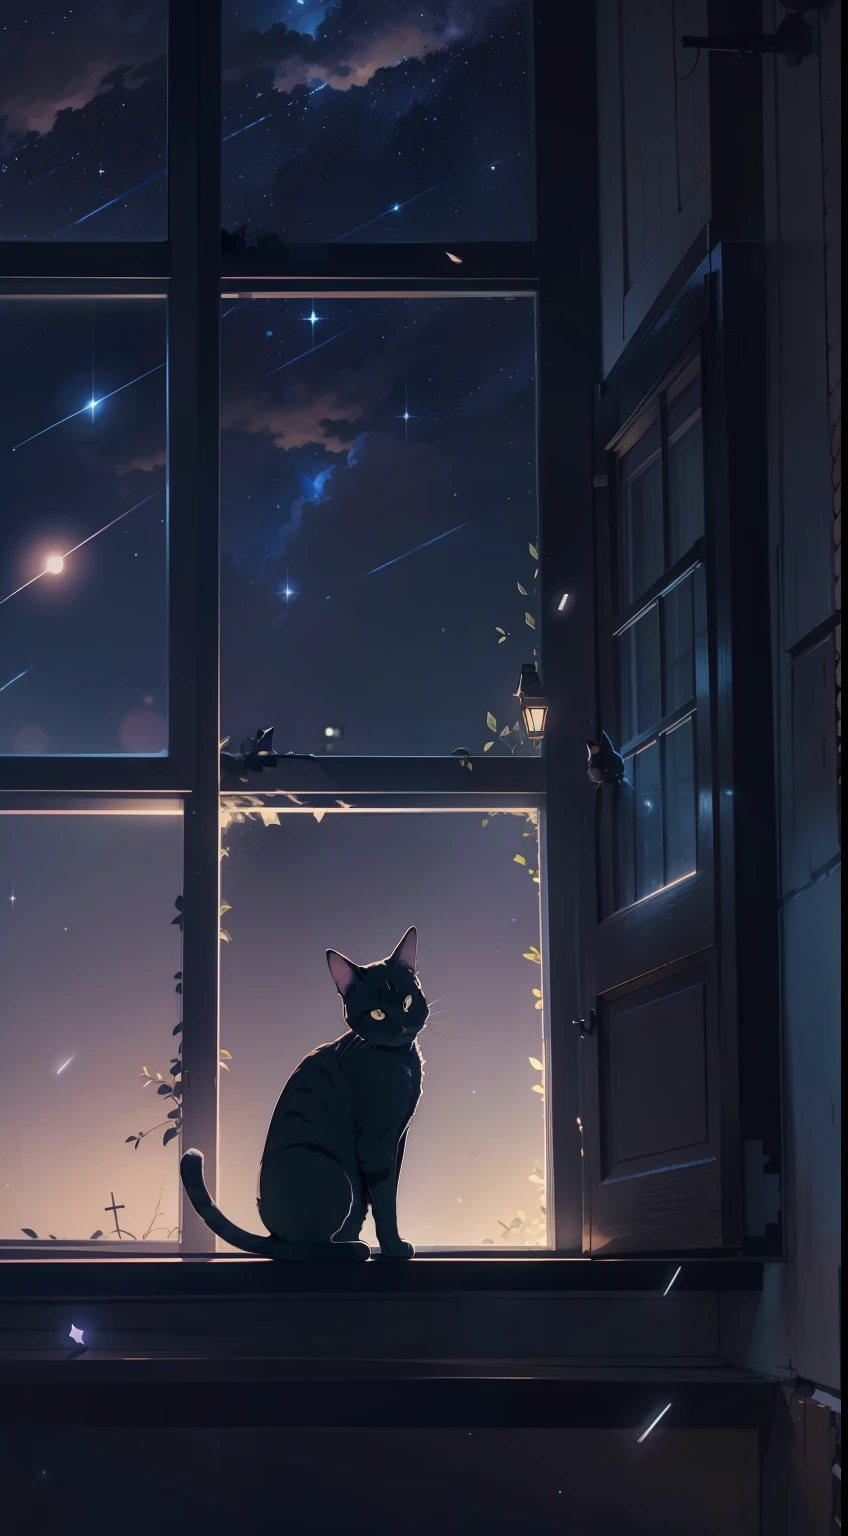 قطة صغيرة جاثمة على حافة النافذة, نجوم الرماية, سماء الليل, أسلوب الأنمي, chiaroscuro, الإضاءة السينمائية, الإضاءة الخلفية, خيال, من الأسفل, 8 كيلو, تفاصيل فائقة, دقيق, أفضل جودة, تفاصيل عالية